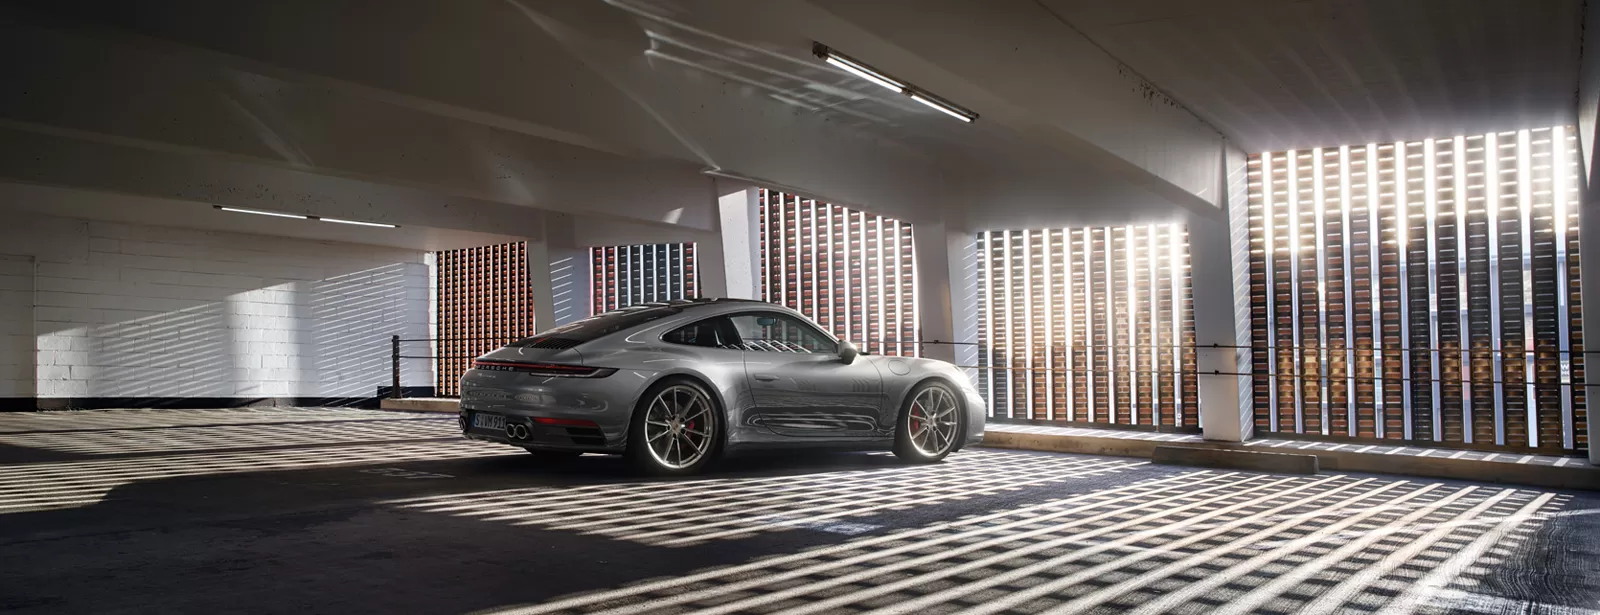 Икона дизайна и технологичности - новый Porsche 911. Старт продаж в Порше Центр Новосибирск